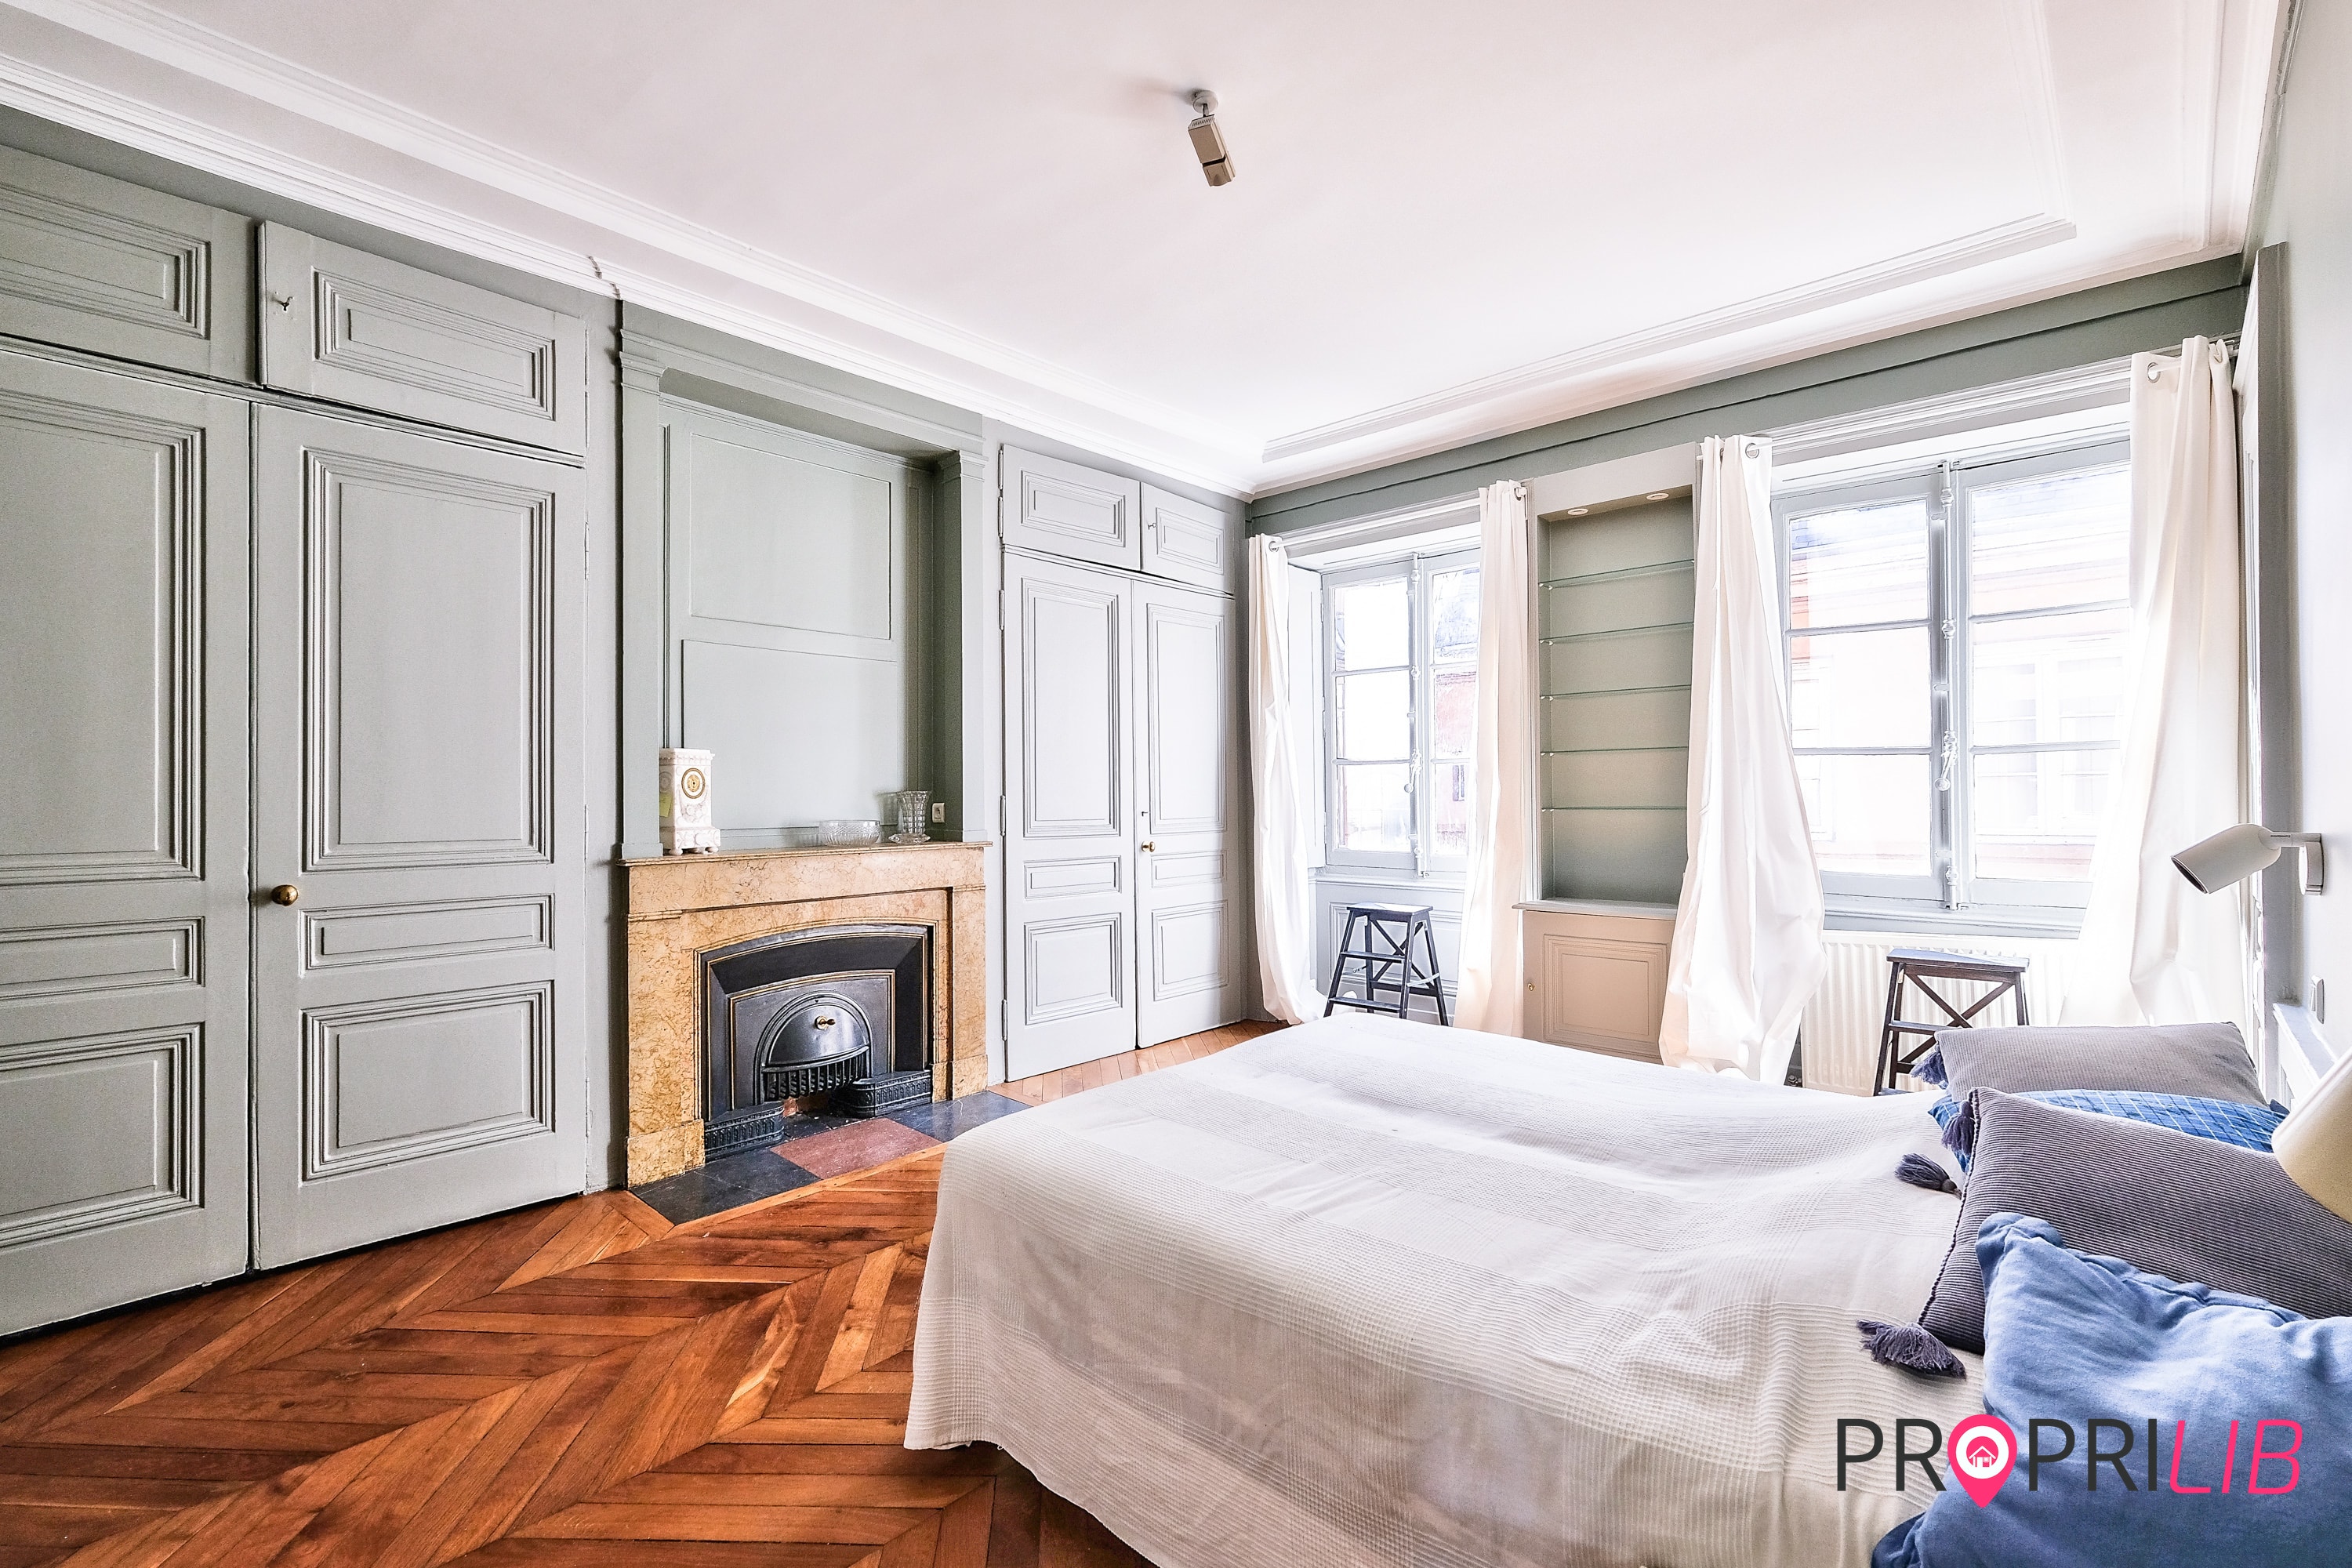 PropriLib l’agence immobilière sans commission vend cet appartement dans Lyon 1er